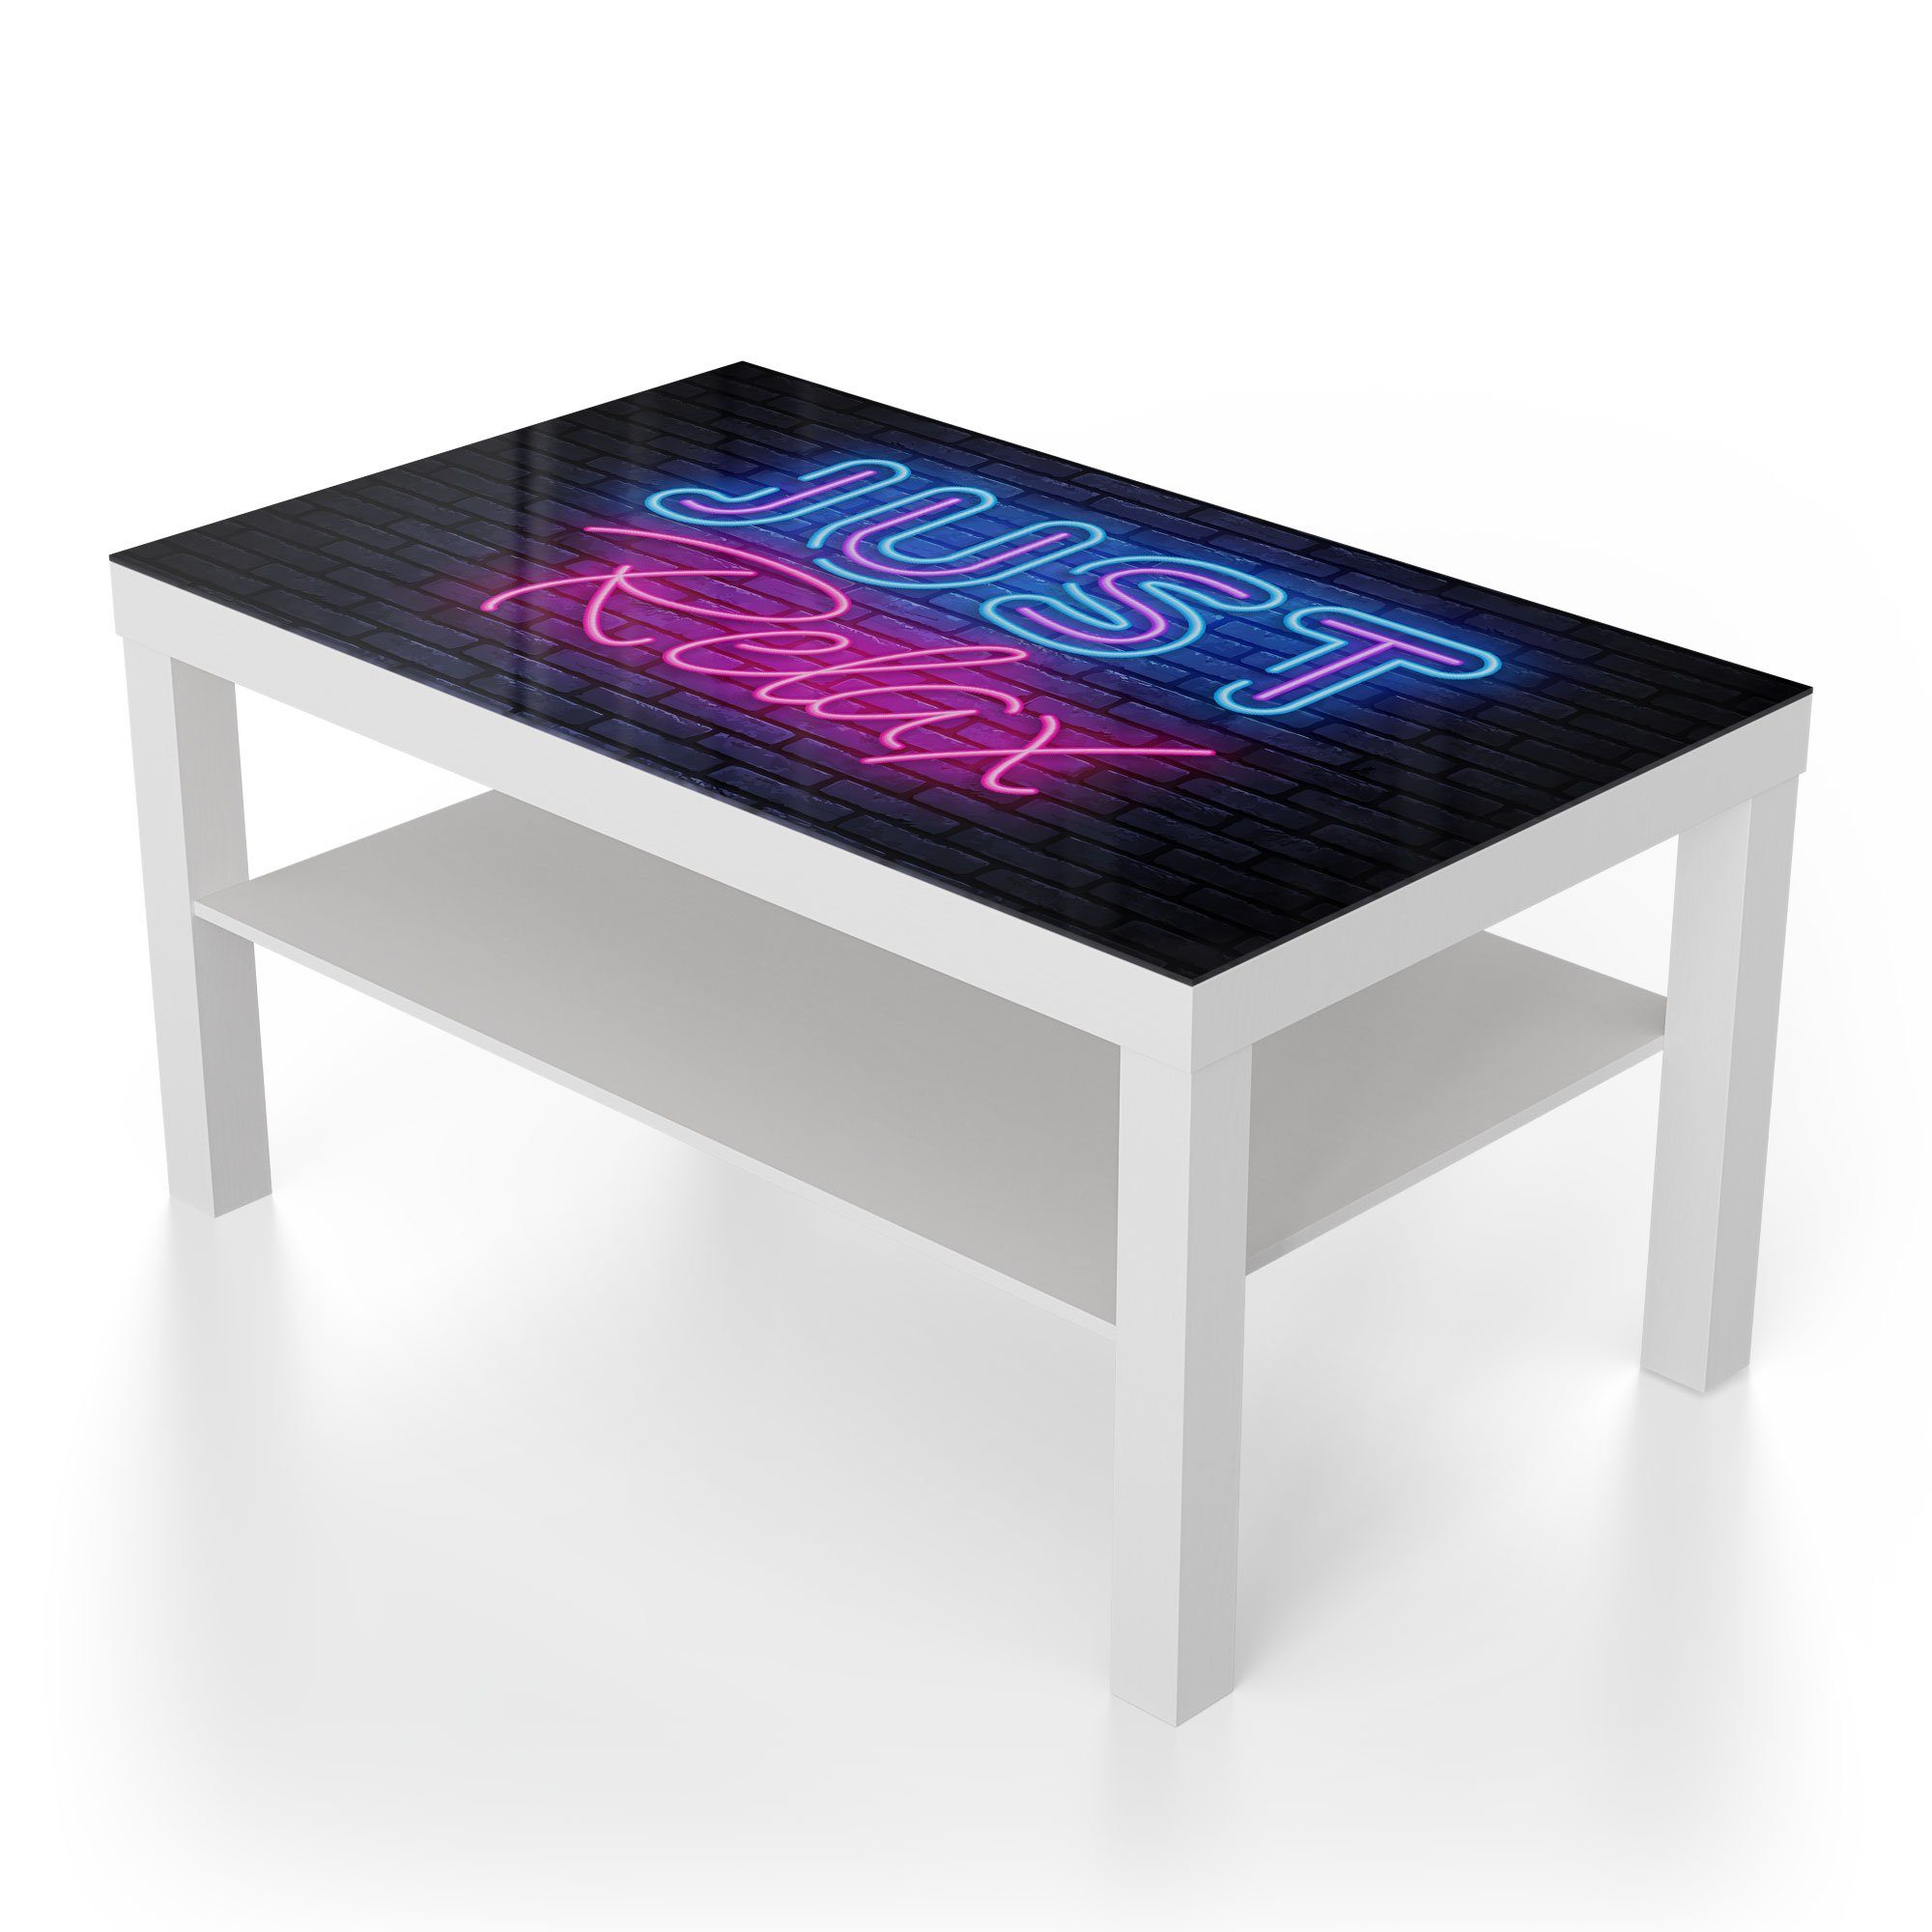 'Spruch Weiß Glas Neon-Design', modern DEQORI Couchtisch Glastisch im Beistelltisch